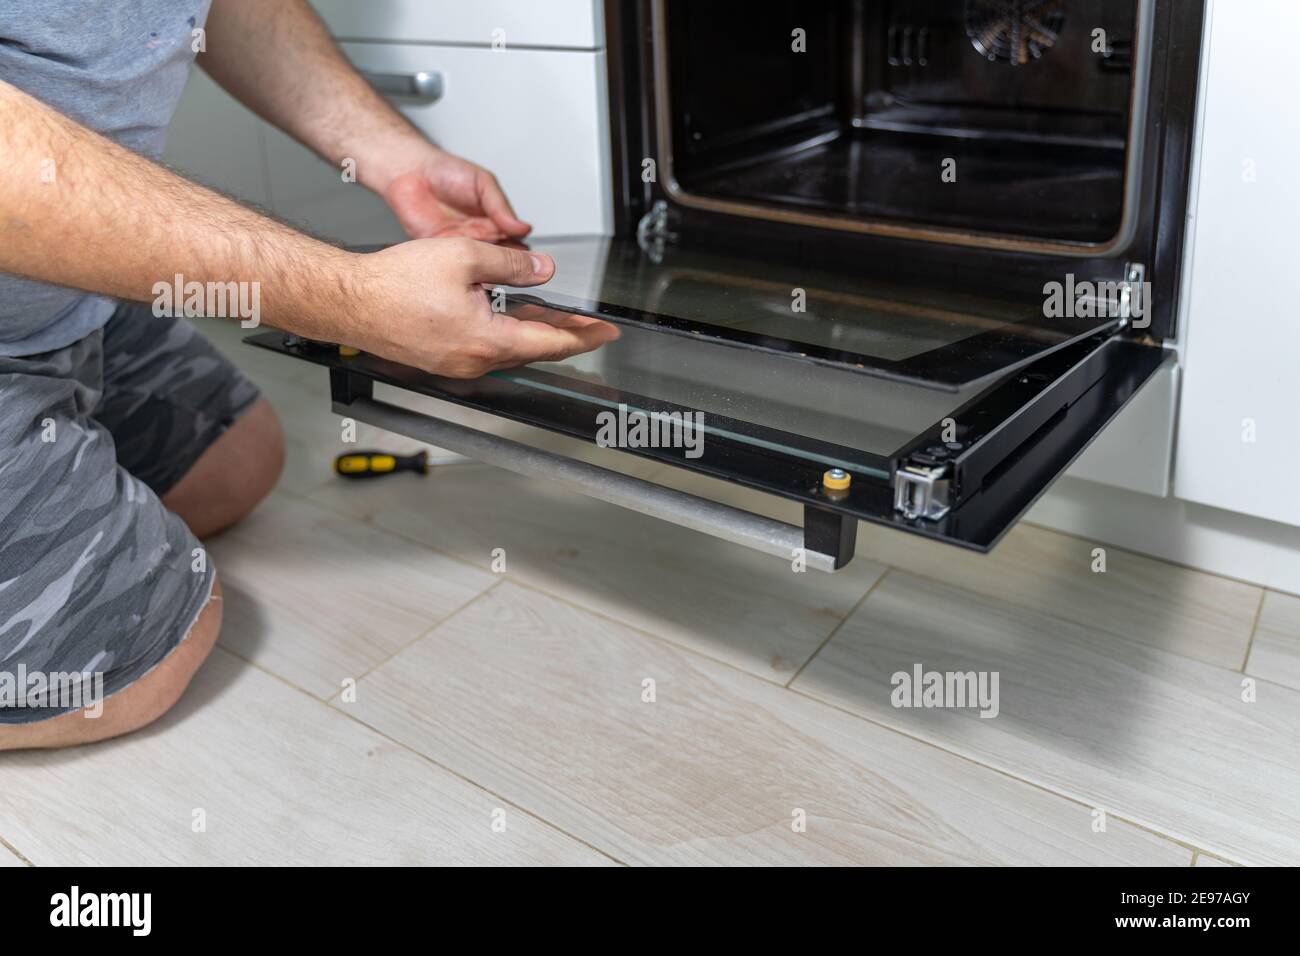 Der Mann entfernt das feuerfeste Glas aus dem Ofen. Reparatur und Reinigung  eines Elektroofens Stockfotografie - Alamy